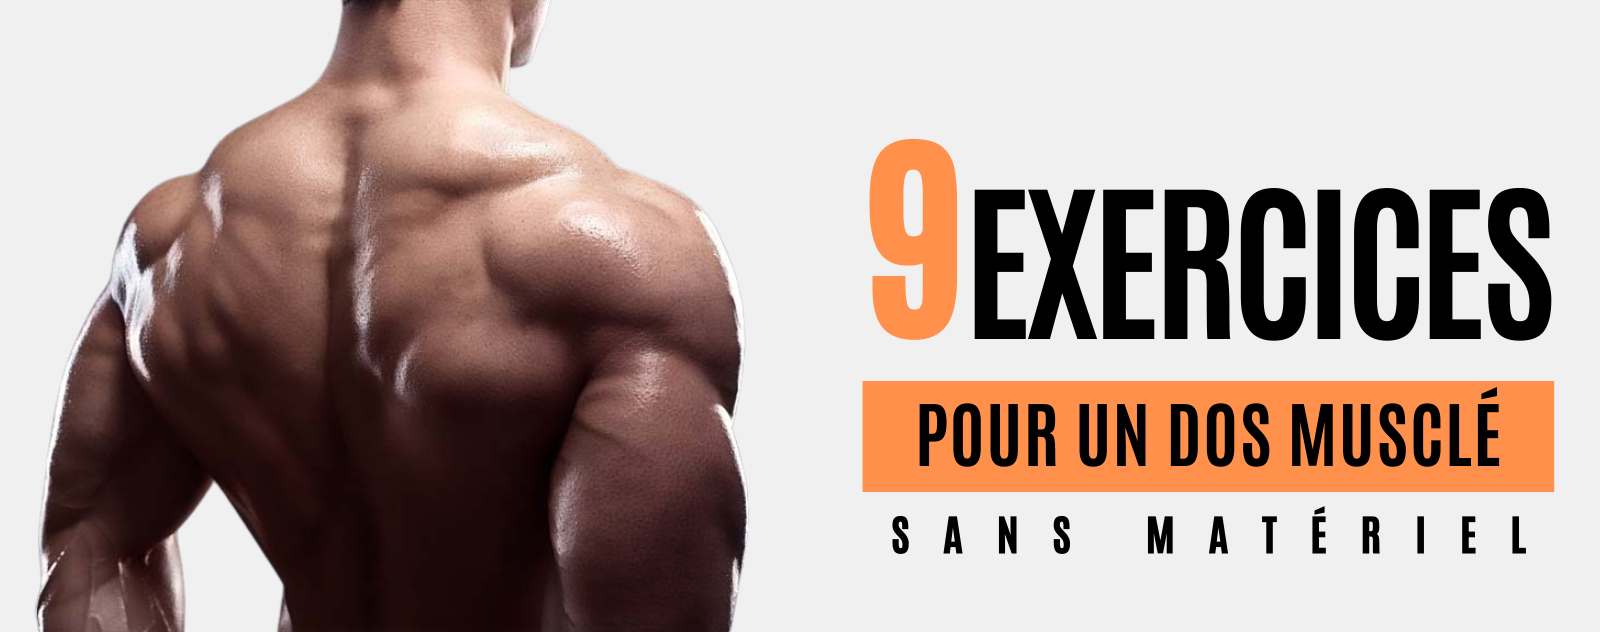 9 Exercices pour le dos sans matériel